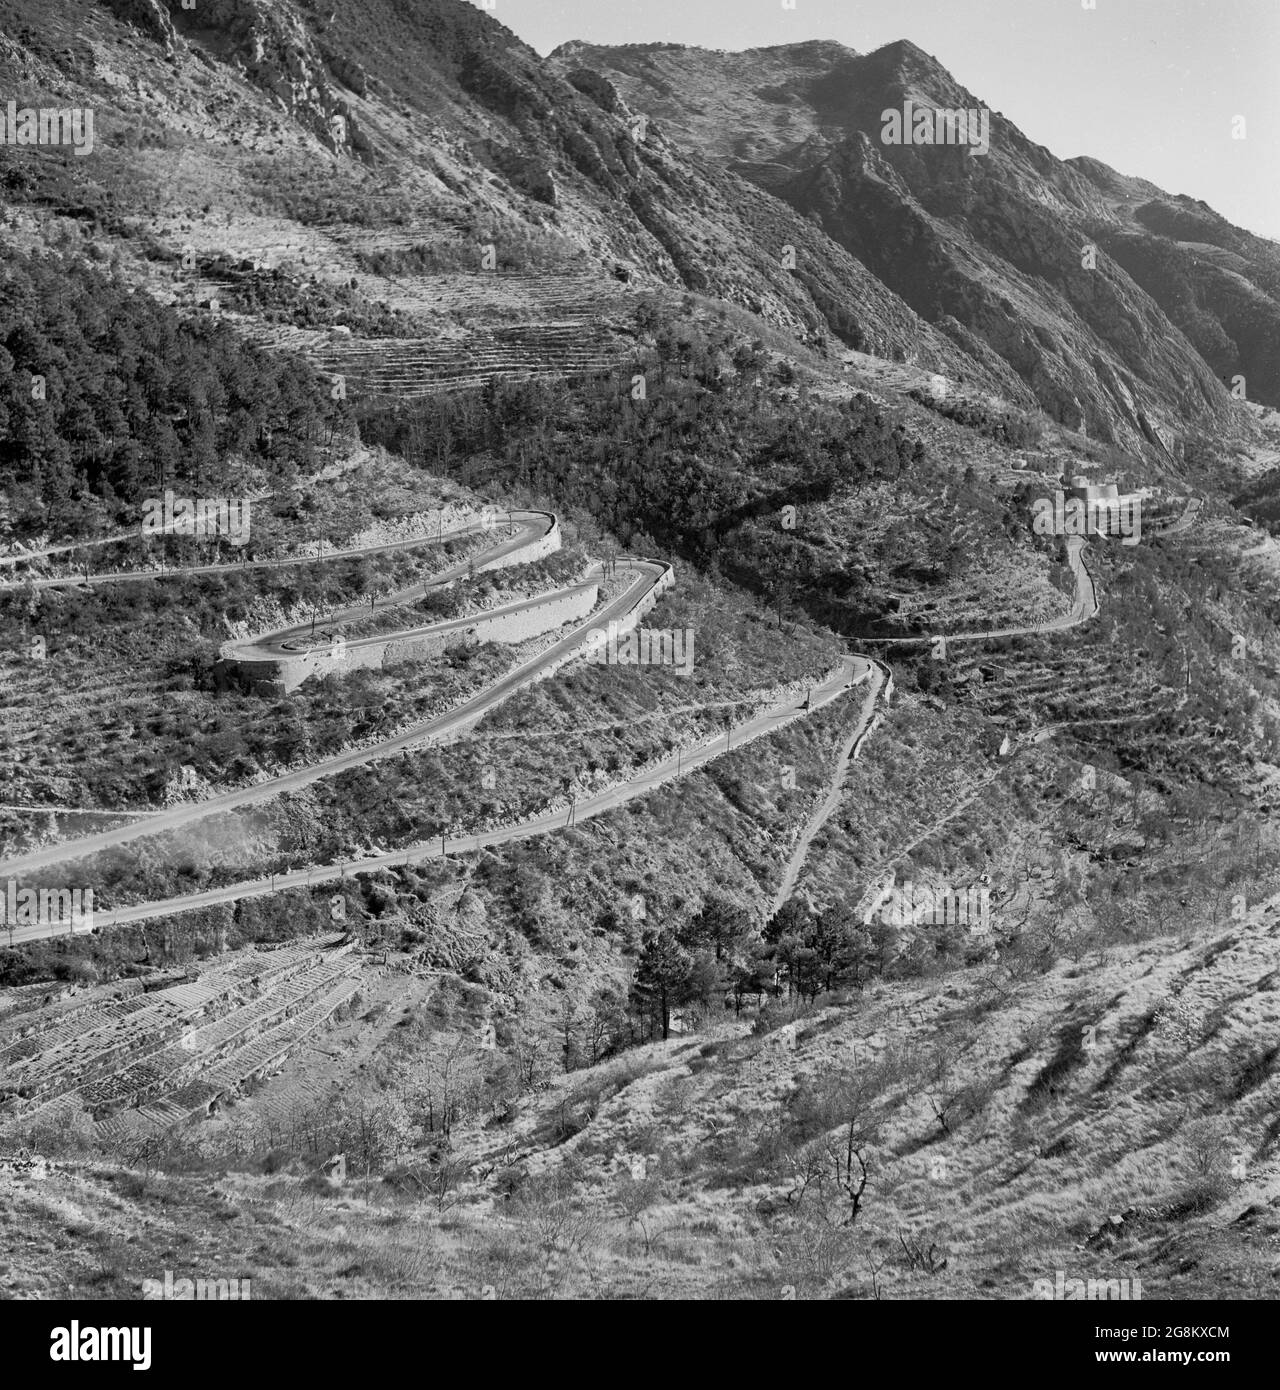 Années 1950, vue historique de cette époque de la route sinueuse de montagne au-dessus de Monaco, le célèbre Col de Turini, près de la frontière itoienne-française et qui est une étape clé du rallye de Monte-Carlo. Banque D'Images